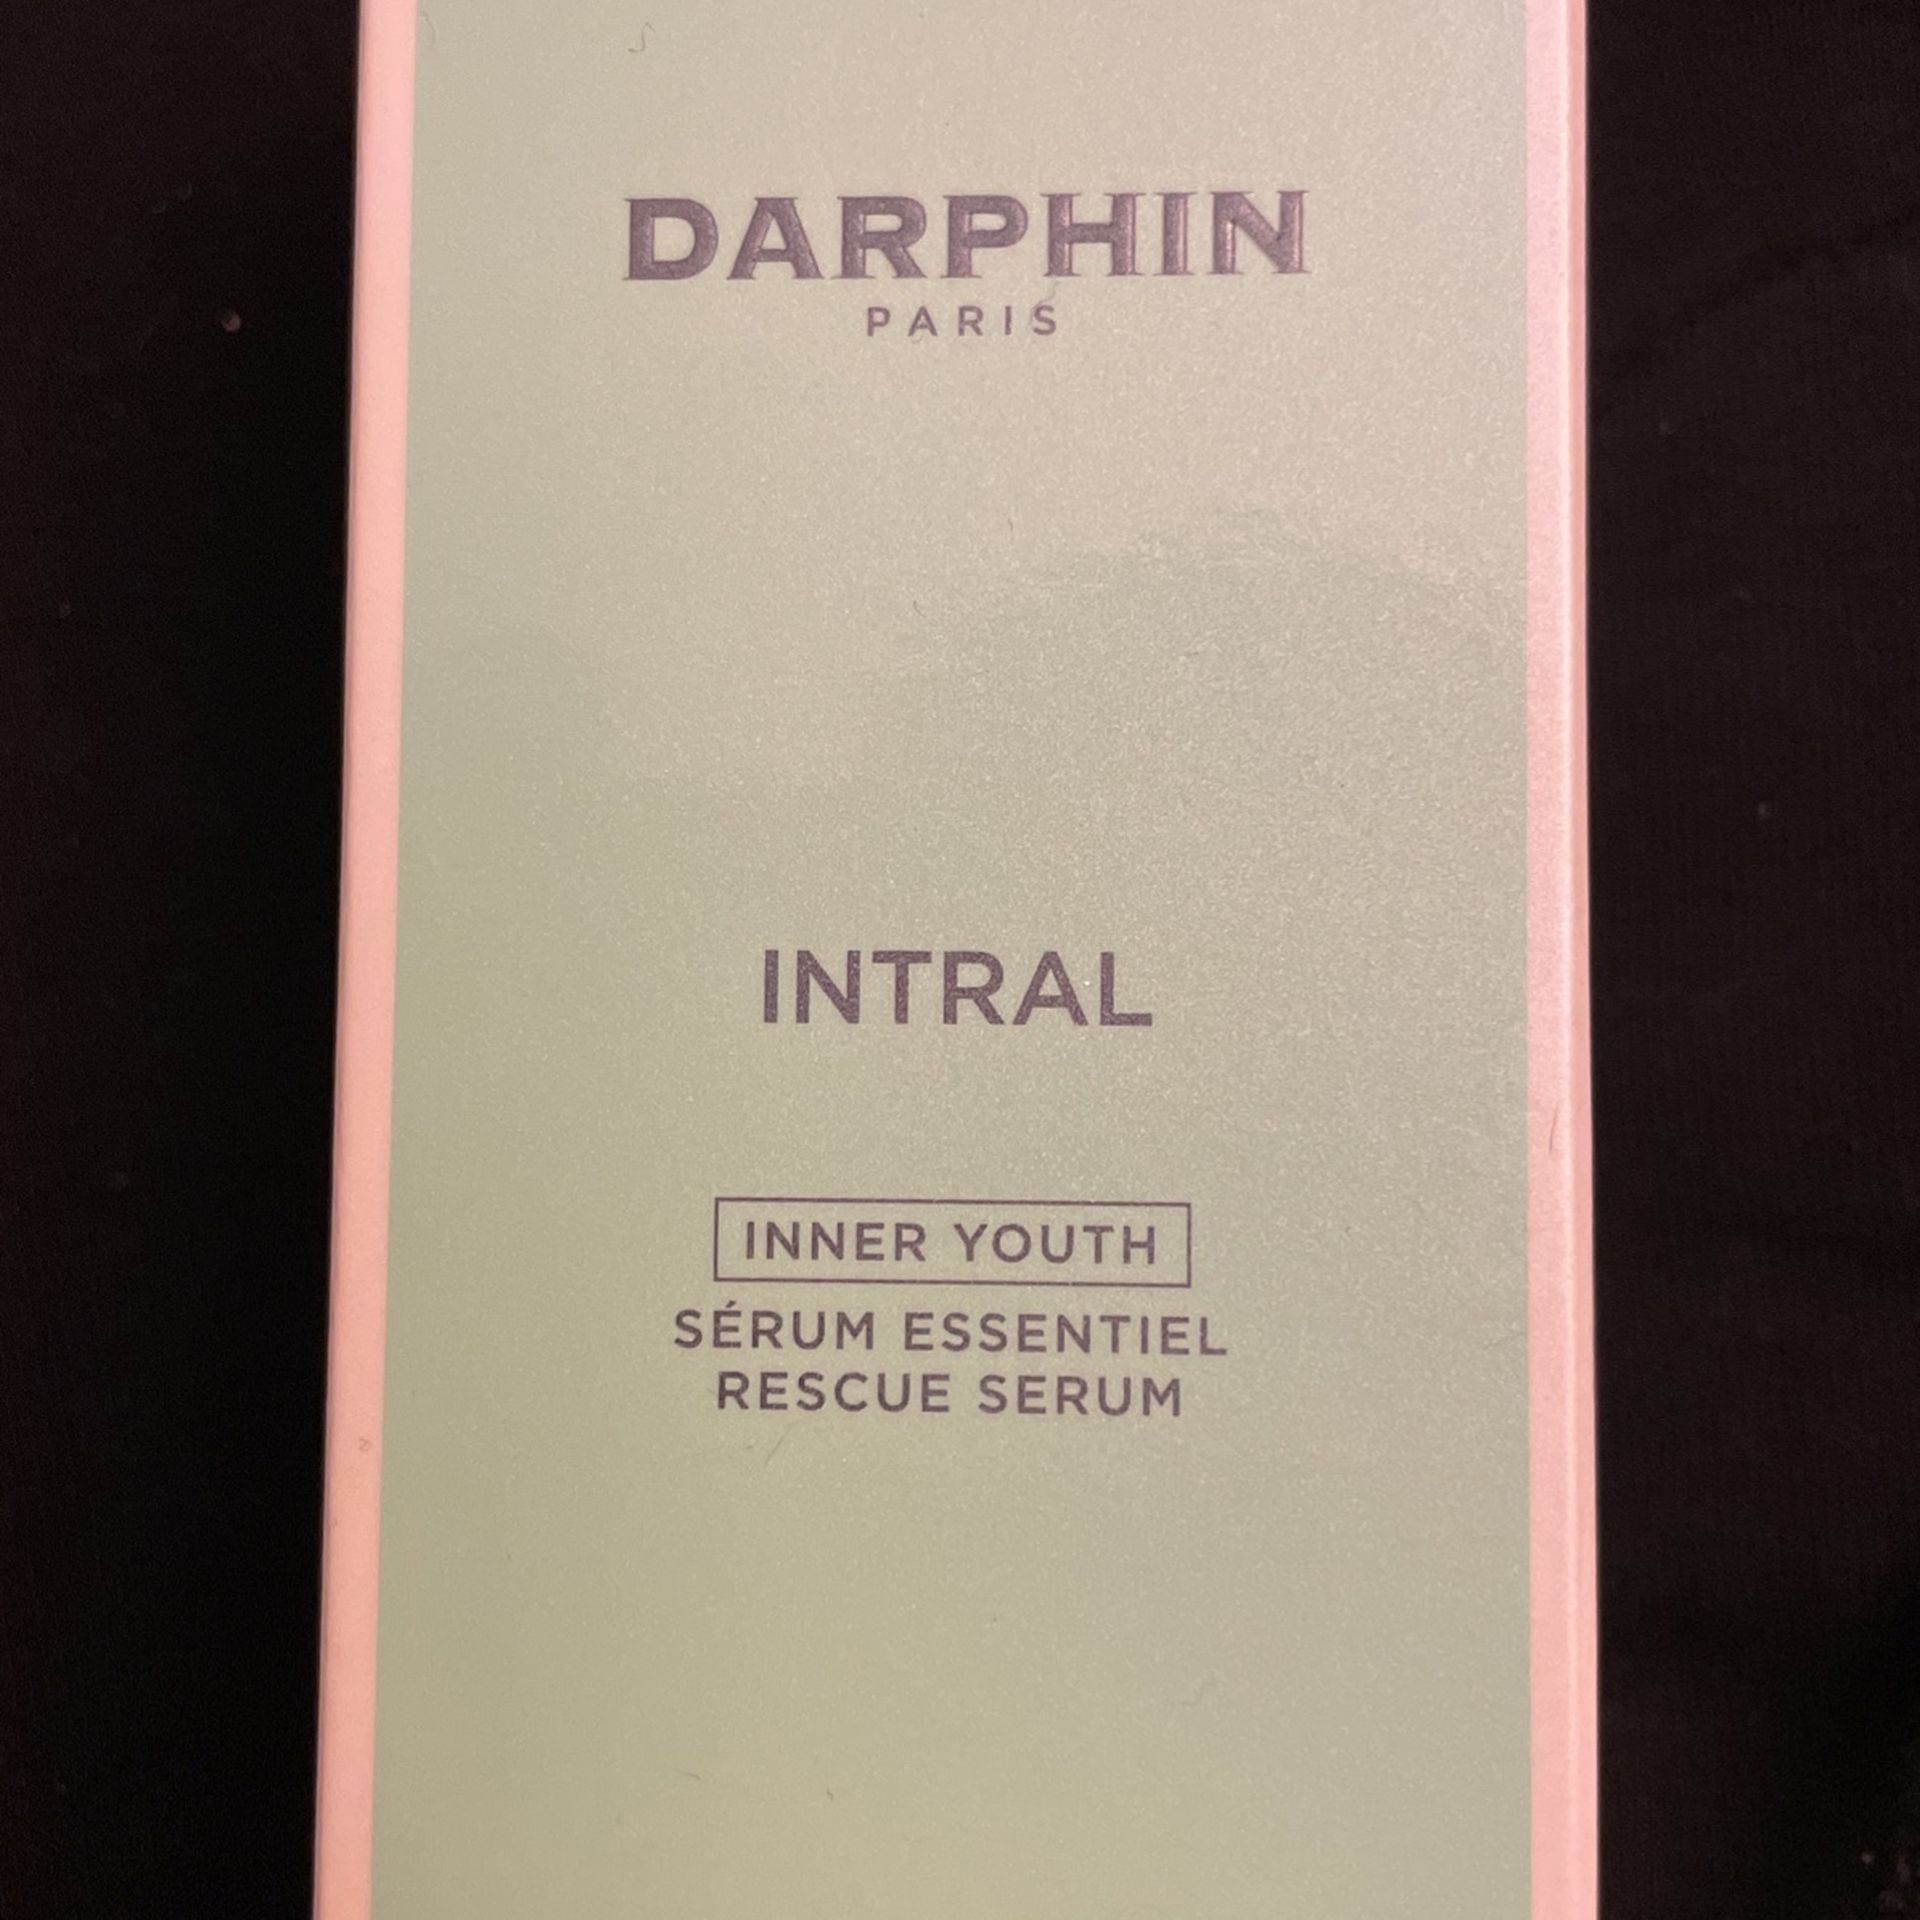 Darphin Paris Inner Youth Serum